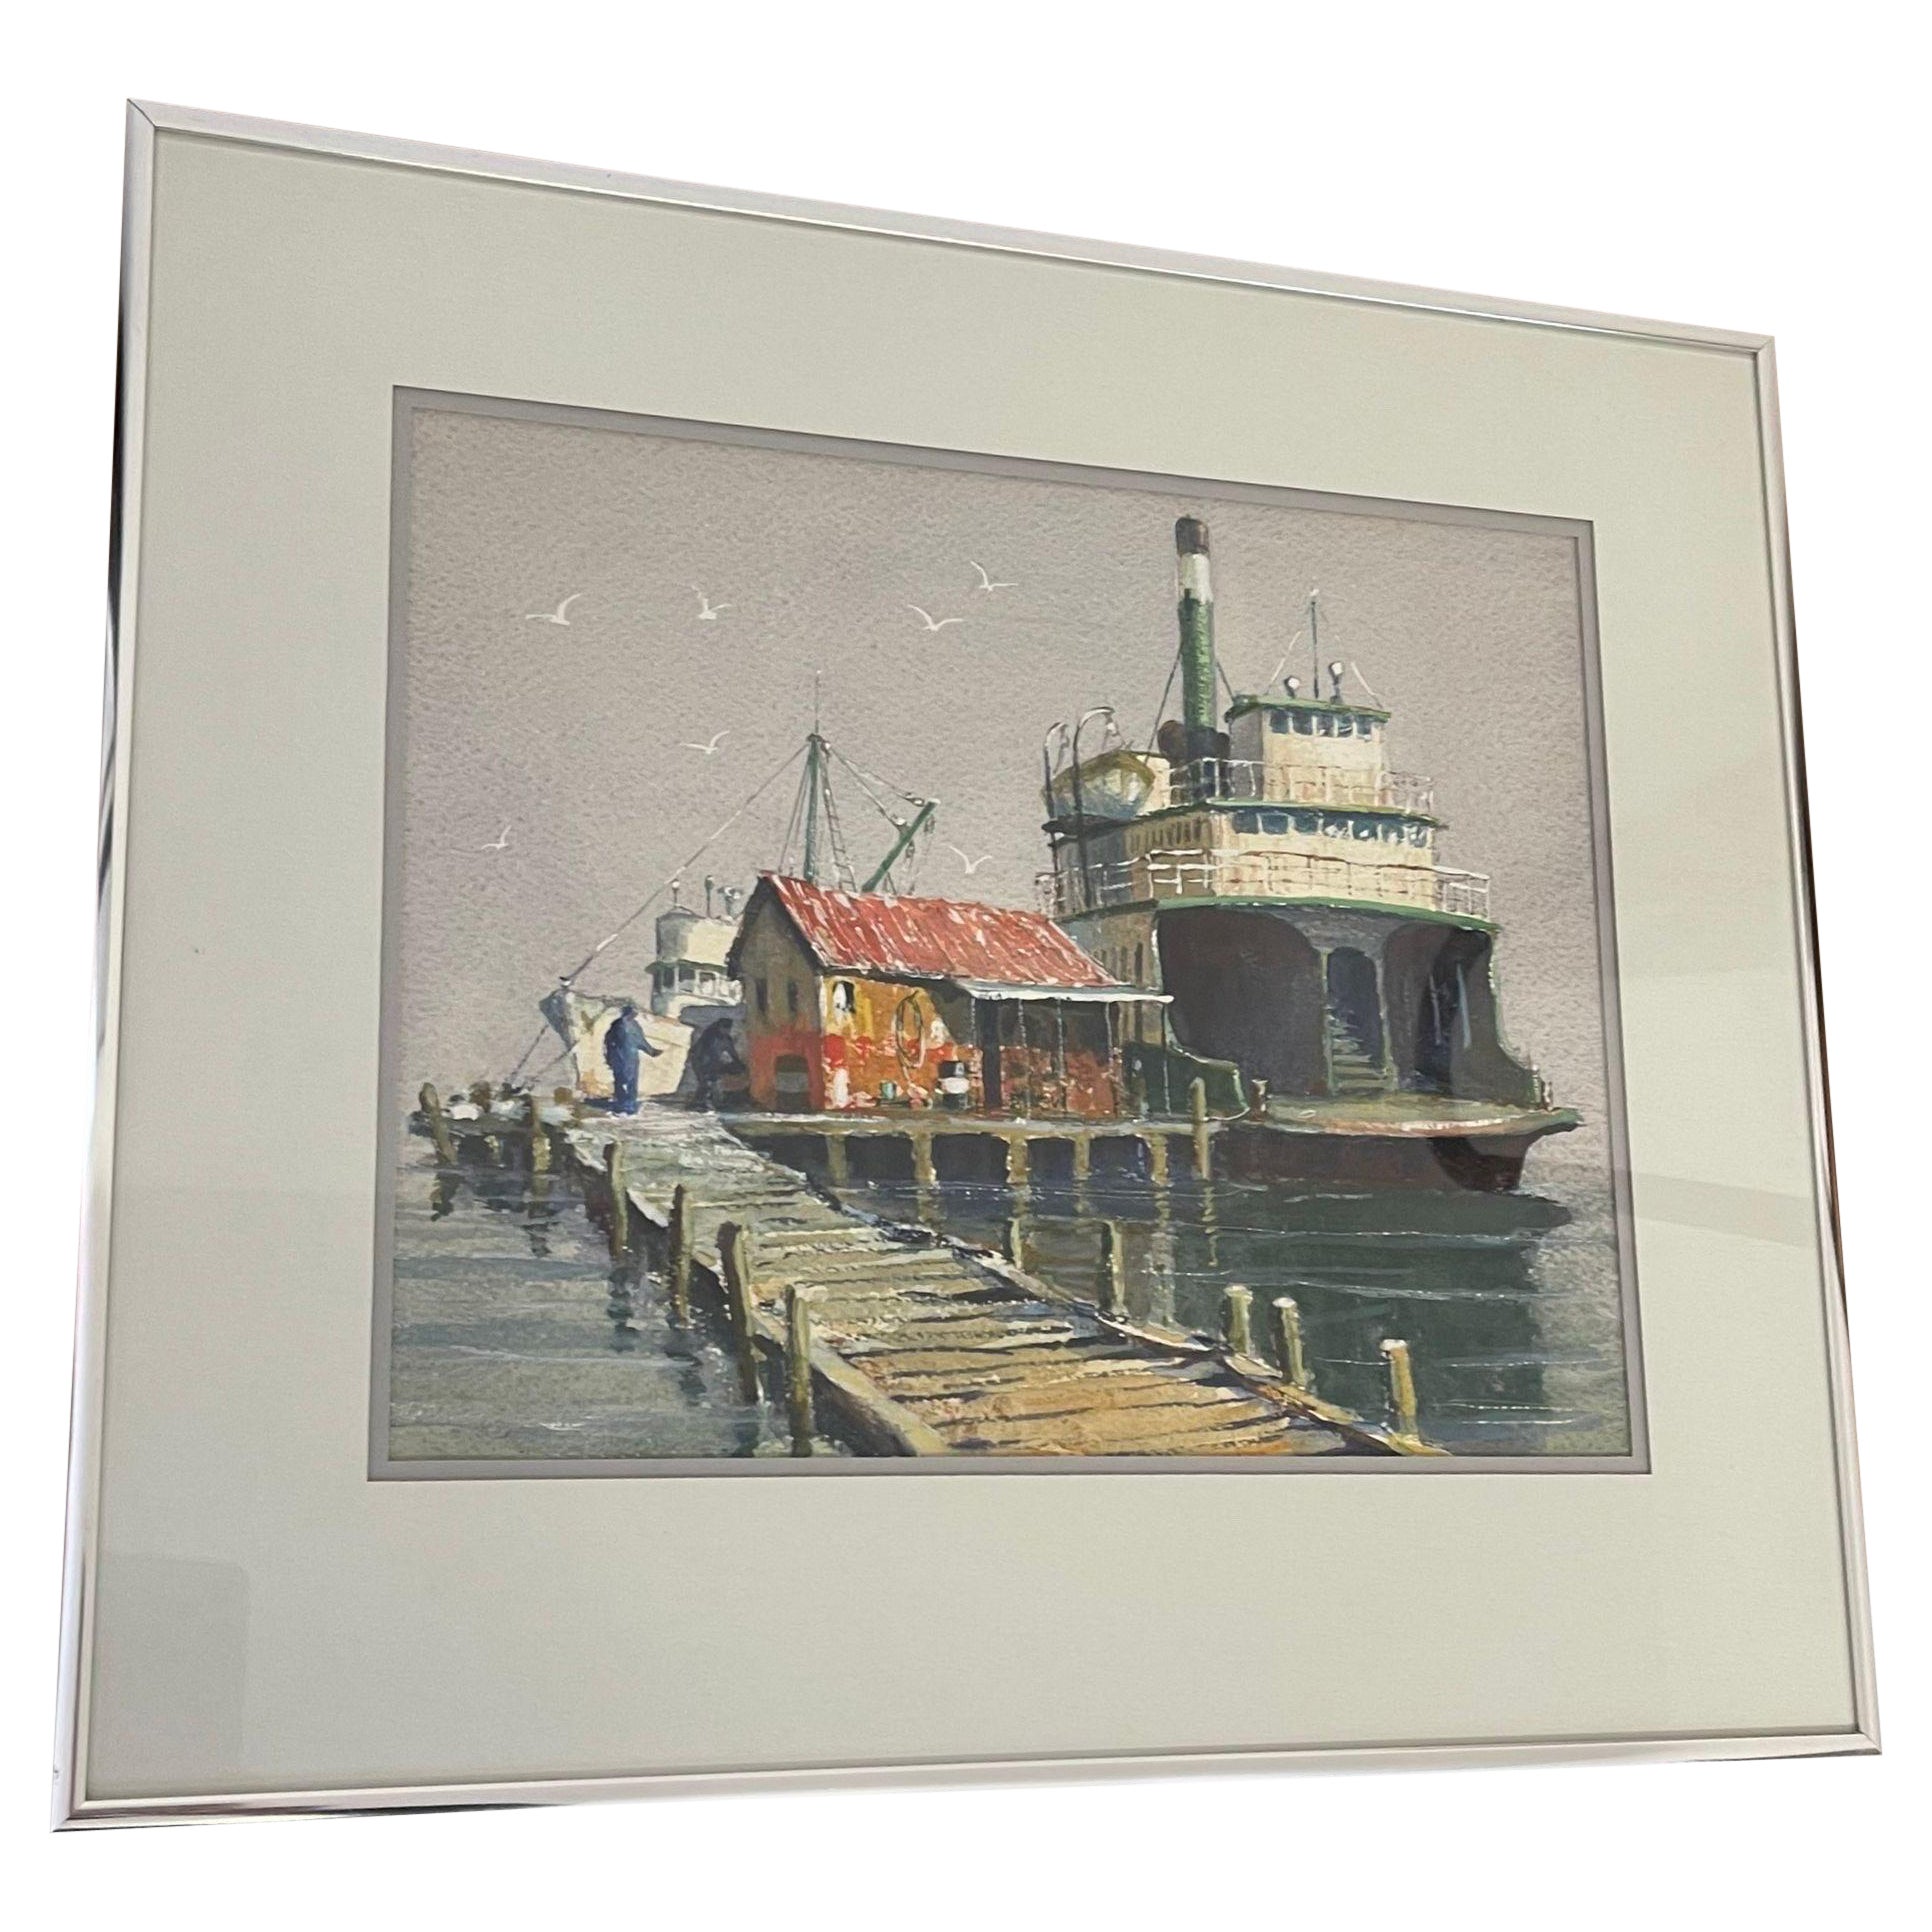 Aquarelle originale encadrée intitulée Ferry for Sale par Coe